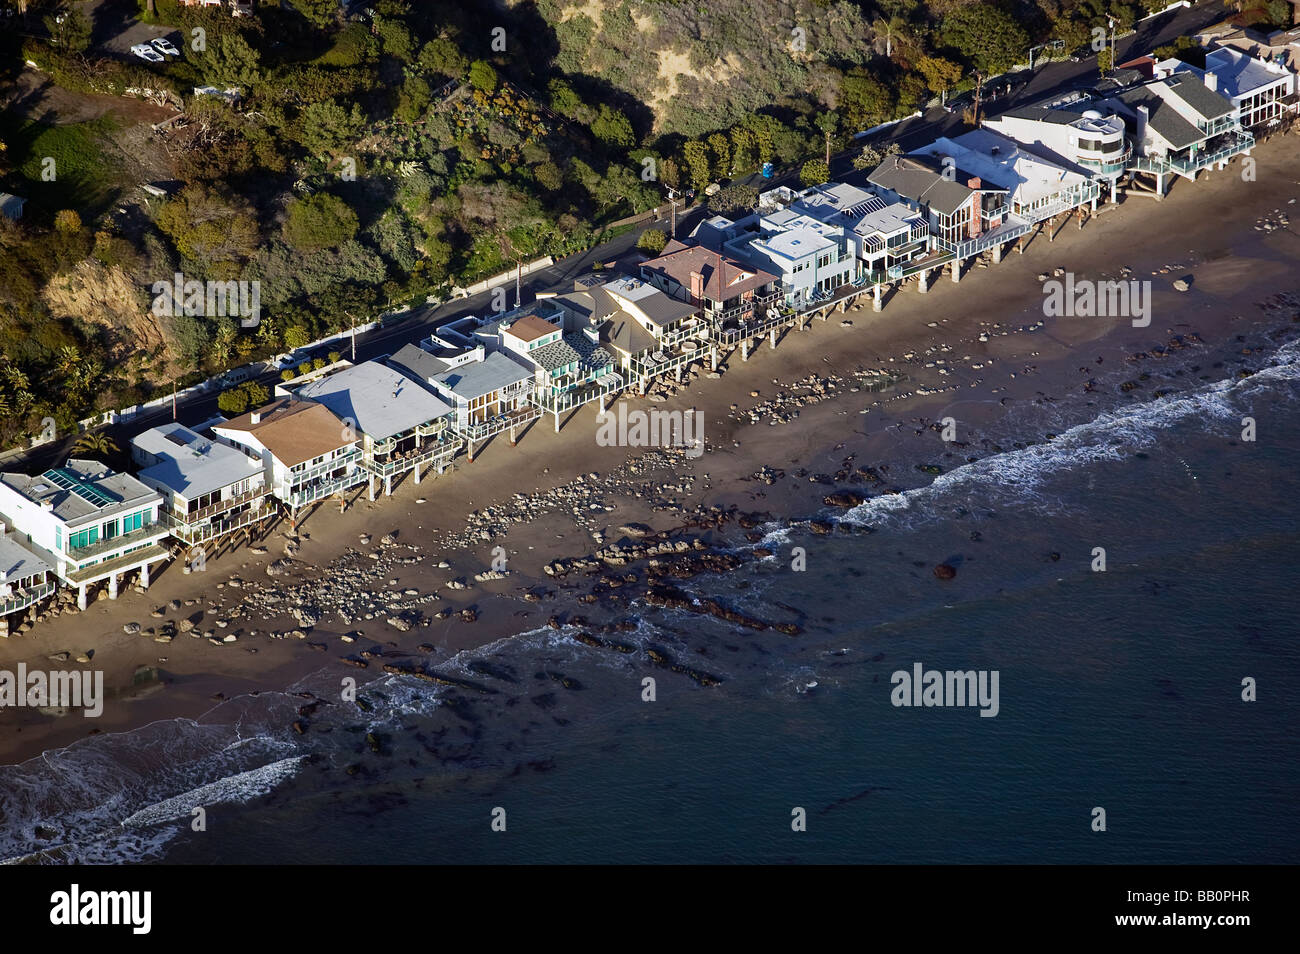 Vue aérienne de la plage au bord de l'océan Pacifique au-dessus des maisons sur pilotis près de la plage de Malibu en Californie Banque D'Images